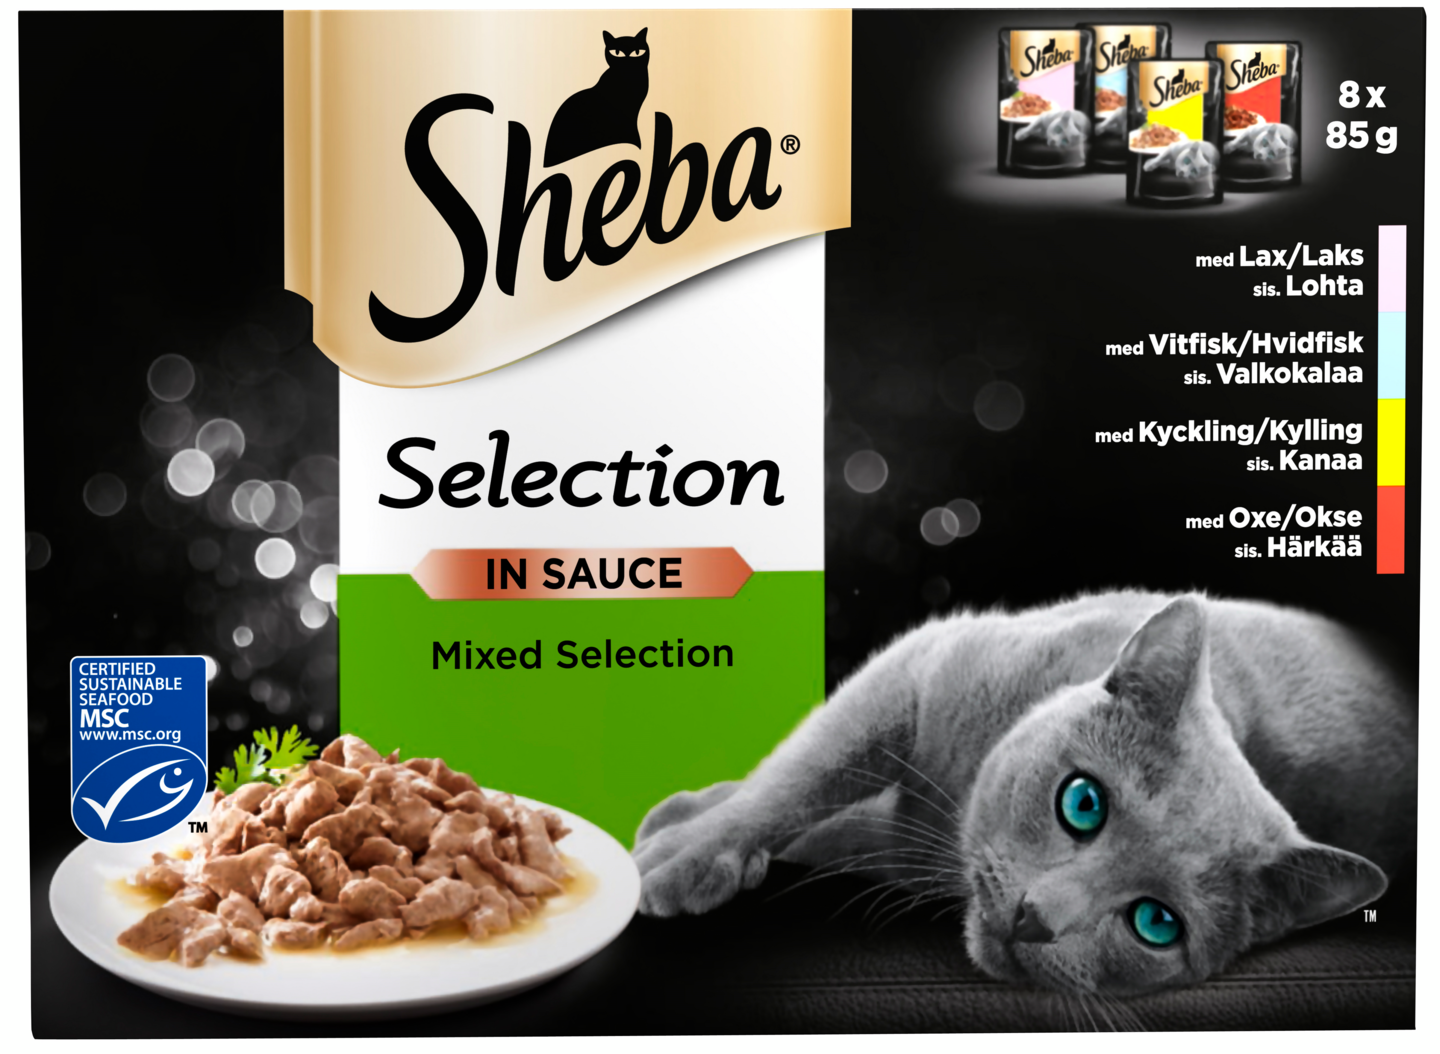 Sheba Selection 8x85g Valikoidut reseptit kastikkeessa MSC sertifioitu